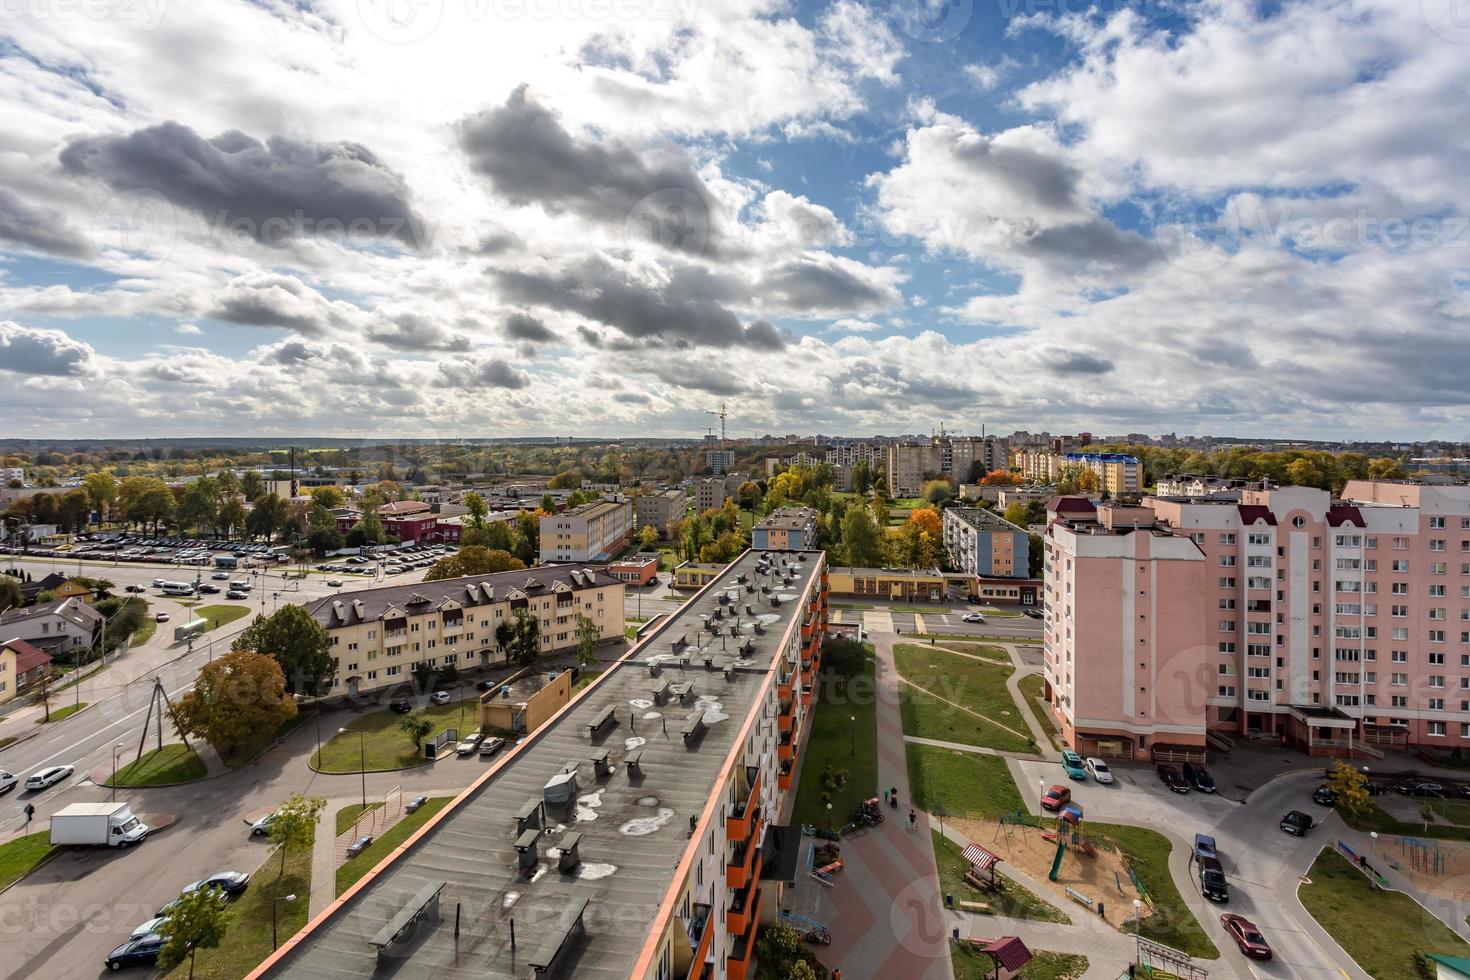 vue panoramique sur le nouveau quartier de construction de grande hauteur quartier résidentiel de développement urbain à l'automne nuageux d'une vue à vol d'oiseau. la vie dans une grande ville photo